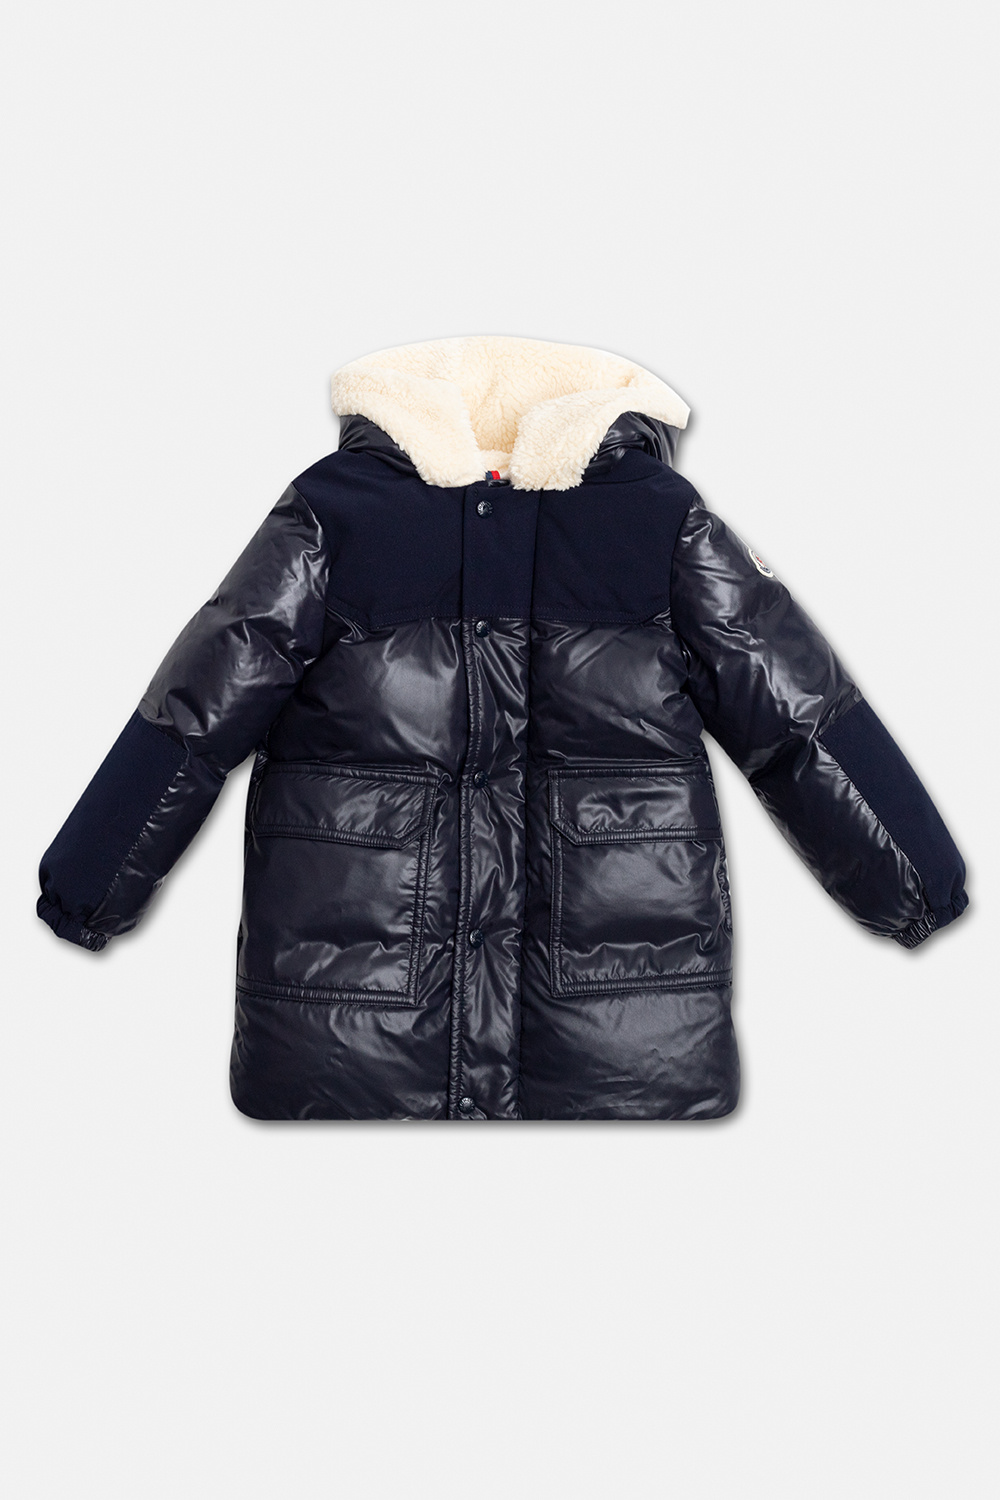 Moncler Enfant ‘Comil’ down jacket